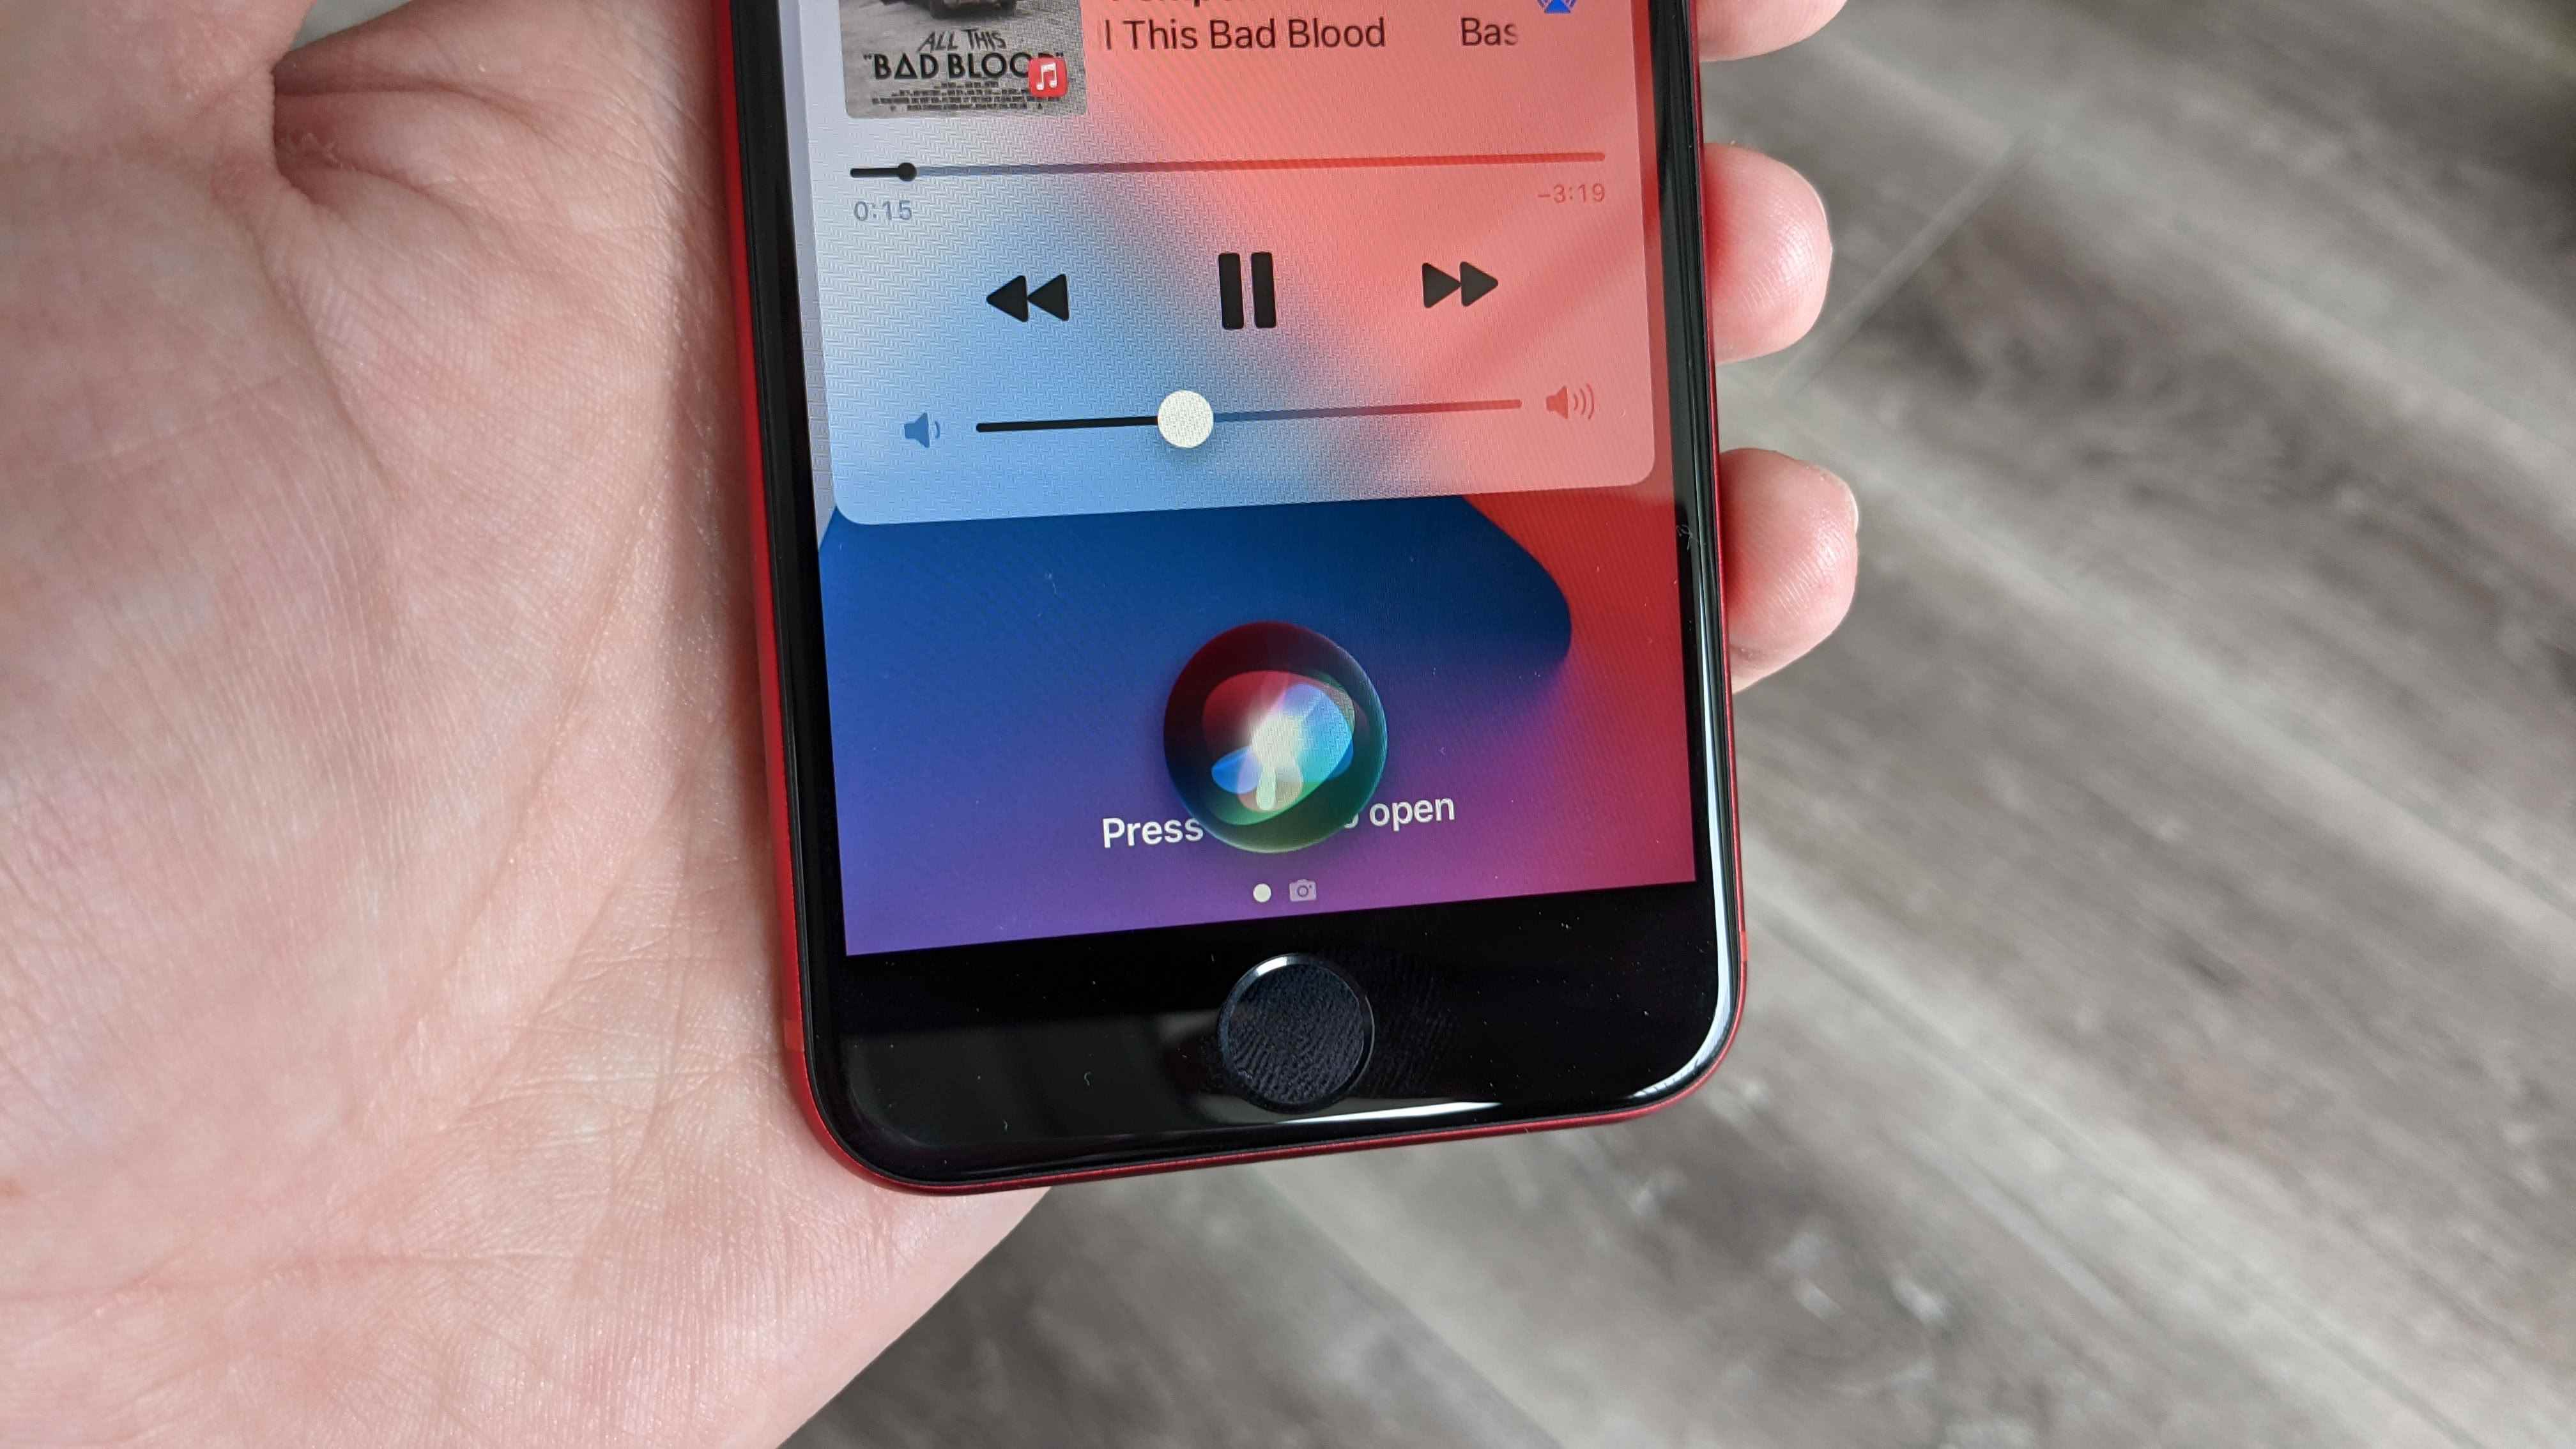 AirPods'u Siri ile daha yüksek sesle nasıl yapılır 1. adım: Oynatma sırasında şunu söyleyin: 